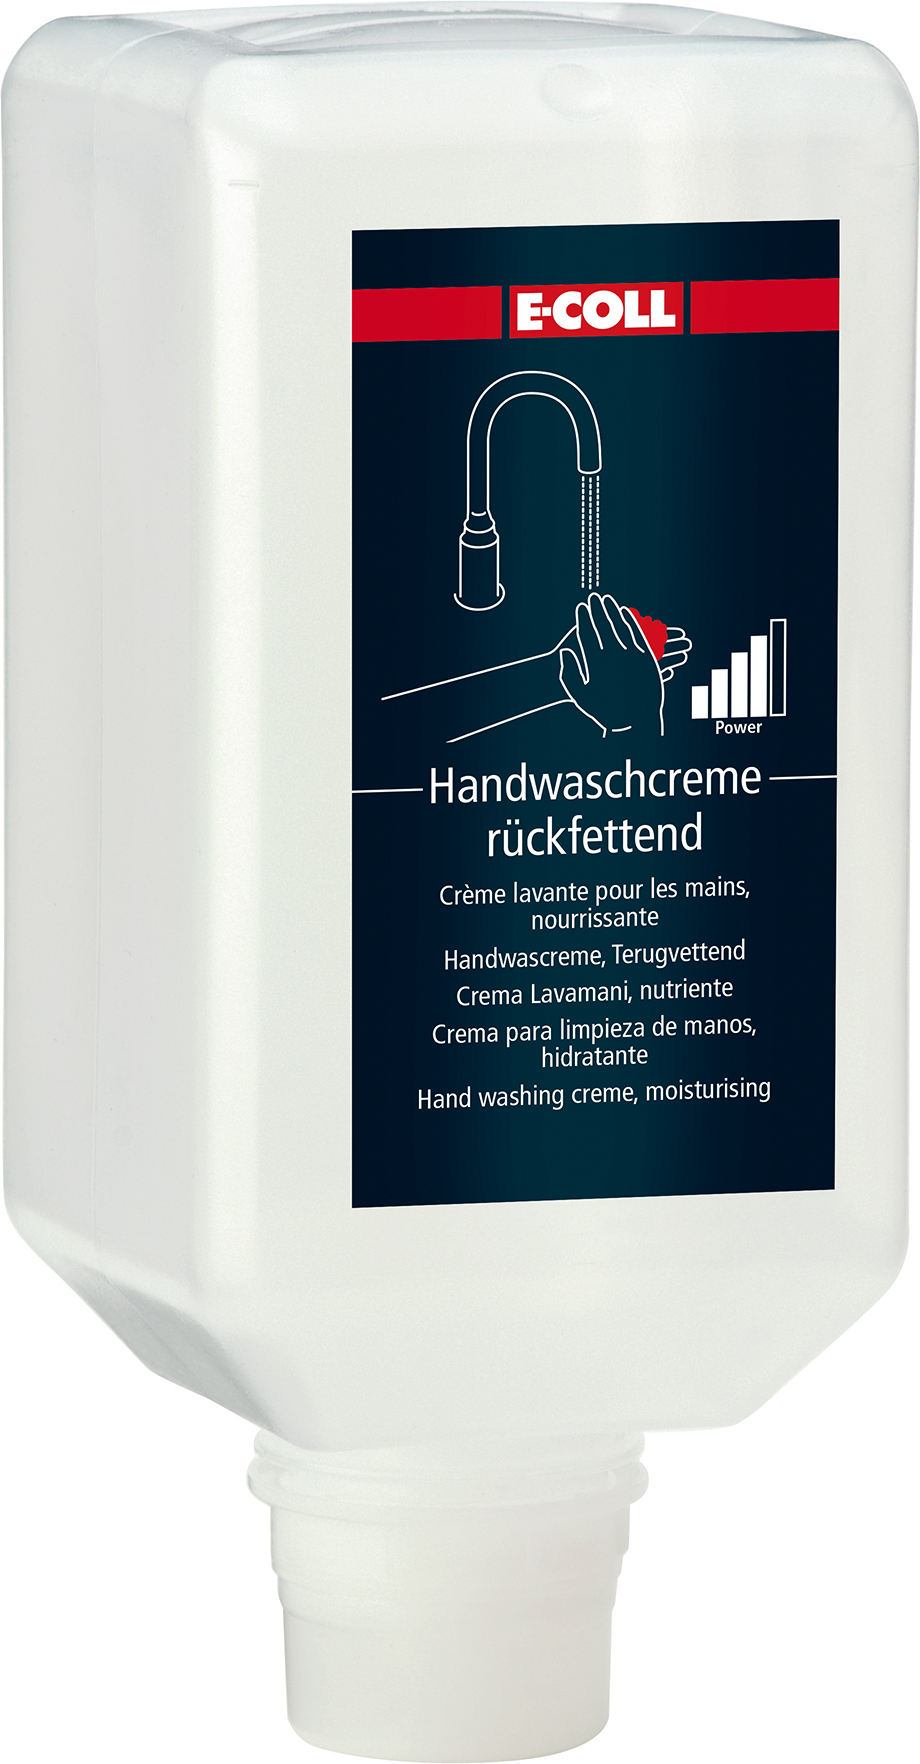 Image de Handwaschcreme 2L Flasche für V-Spender E-COLL